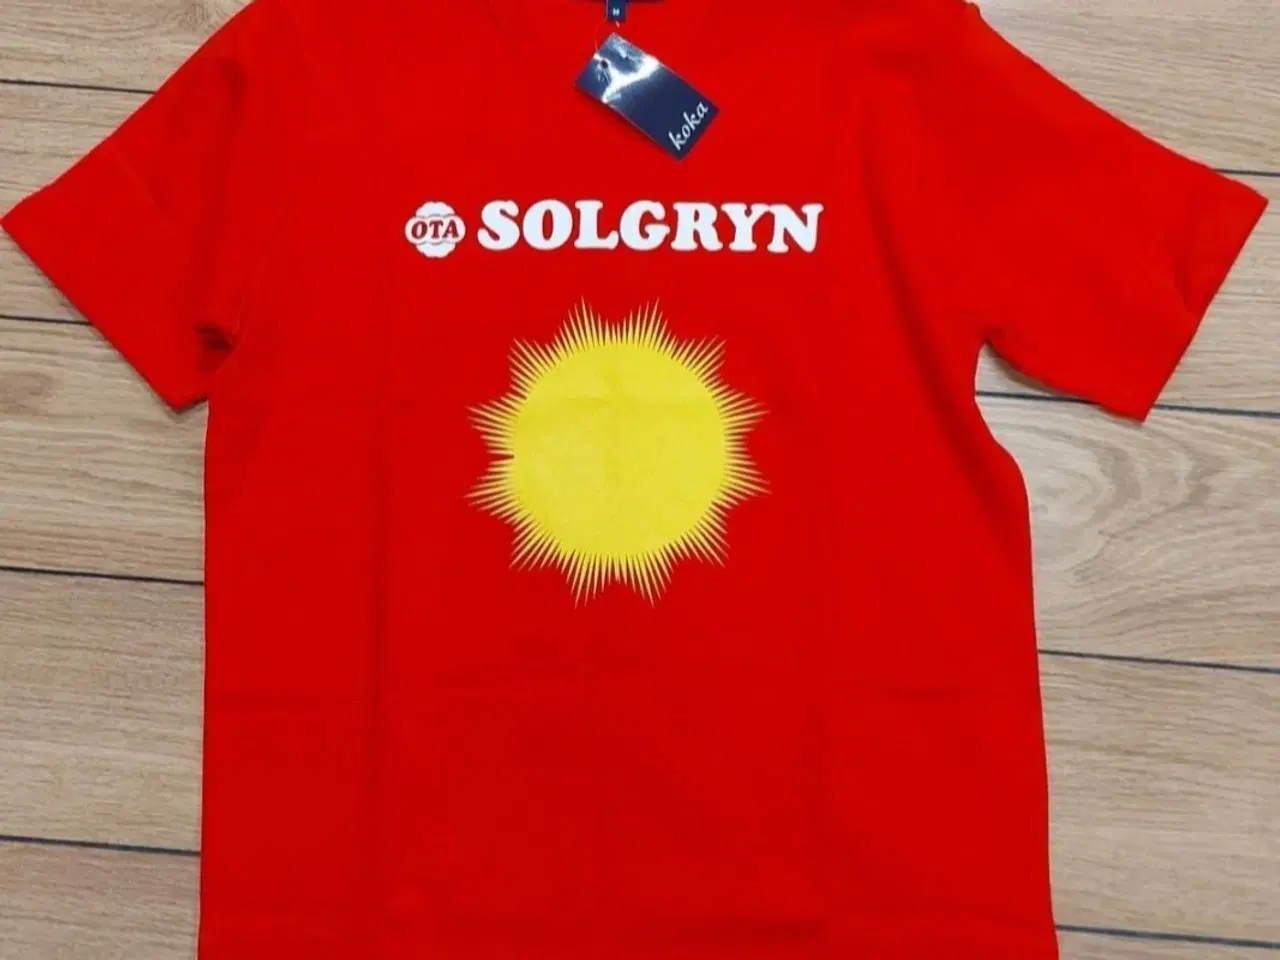 Billede 1 - OTA solgryn t-shirt  - nye